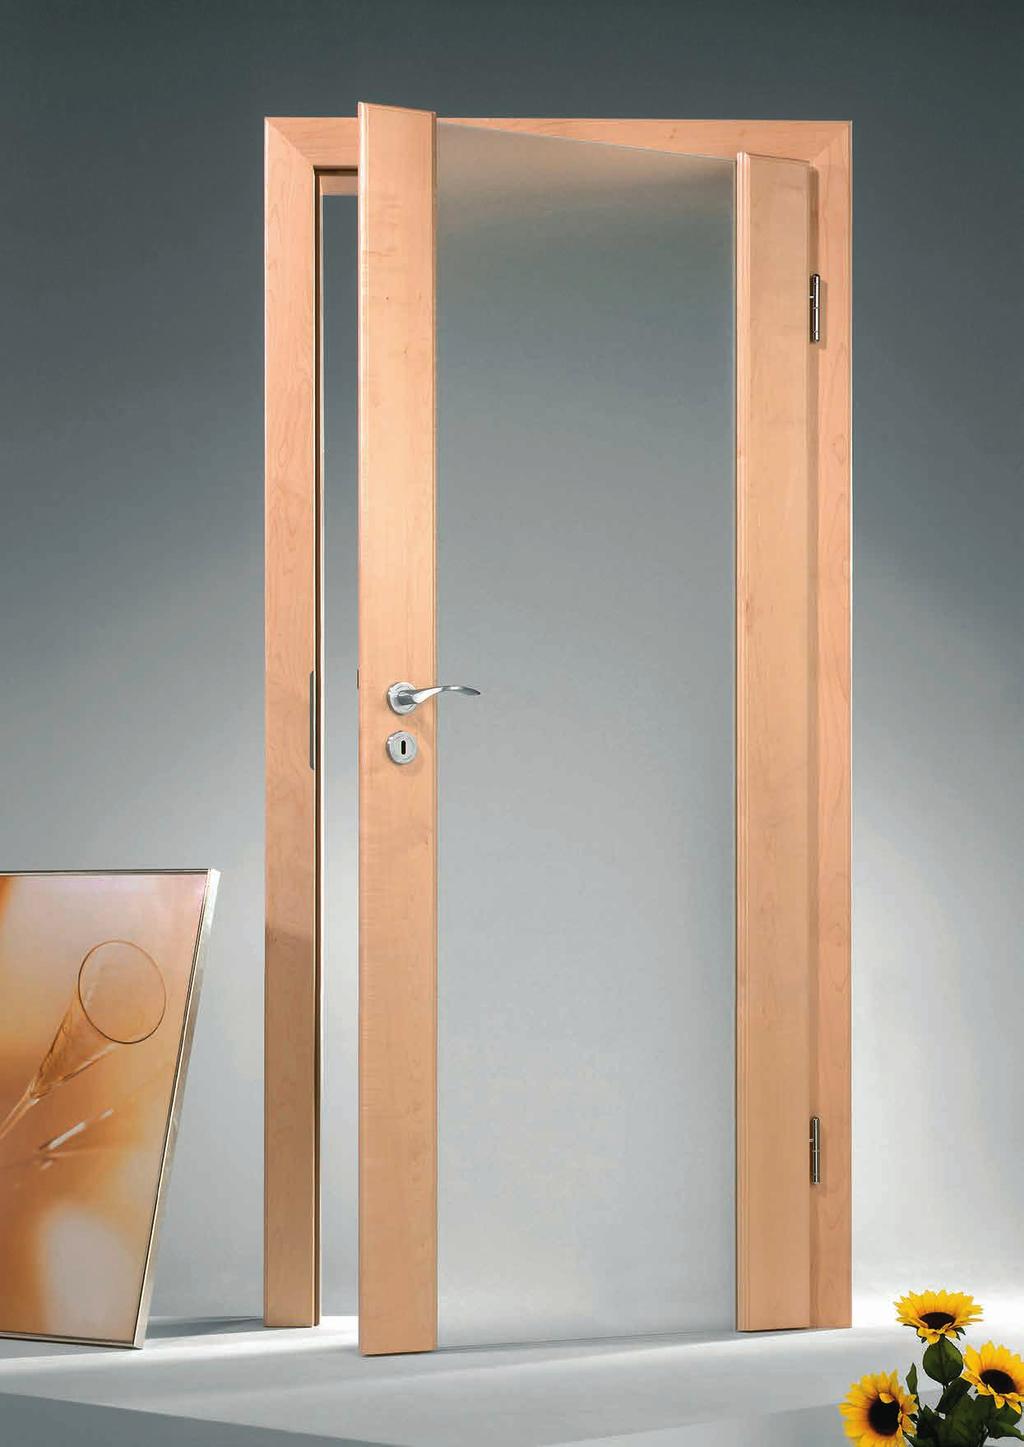 Massiv Holz-Glastüren sind die transparente Komposition aus Massivholz und Glas.